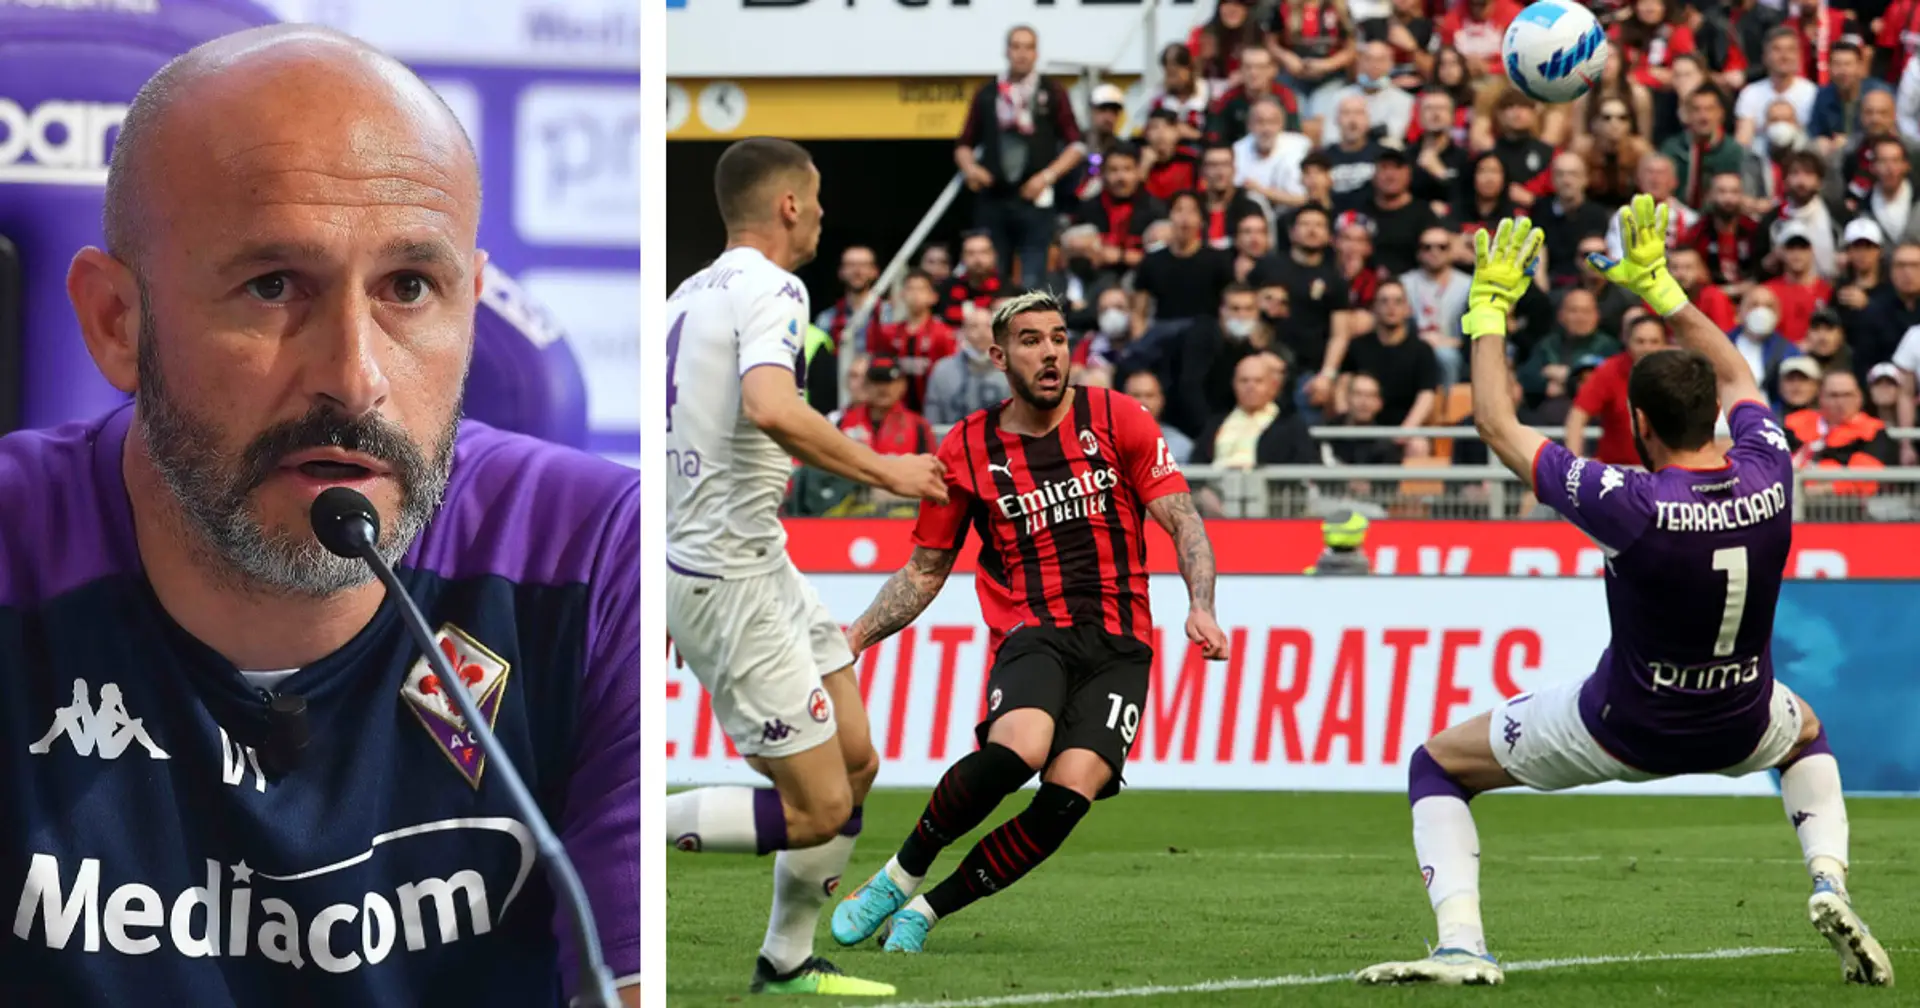 "Temo tutto del Milan": Italiano alza l'attenzione della Fiorentina, e torna sul match dell'anno scorso